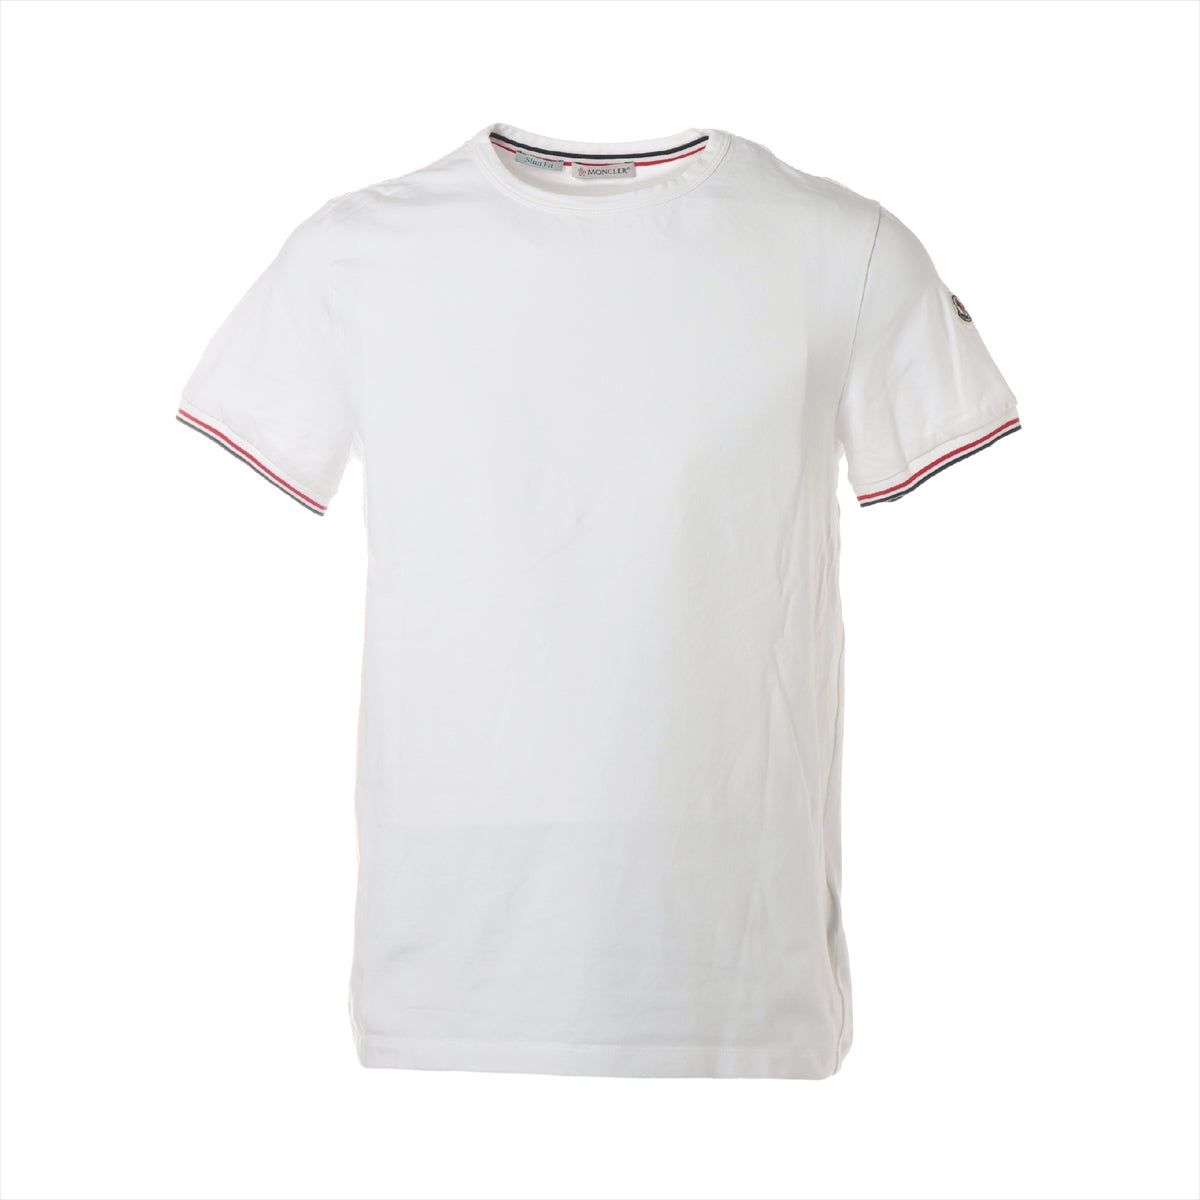 モンクレール 21年 コットン×ポリウレタン Tシャツ M メンズ ホワイト